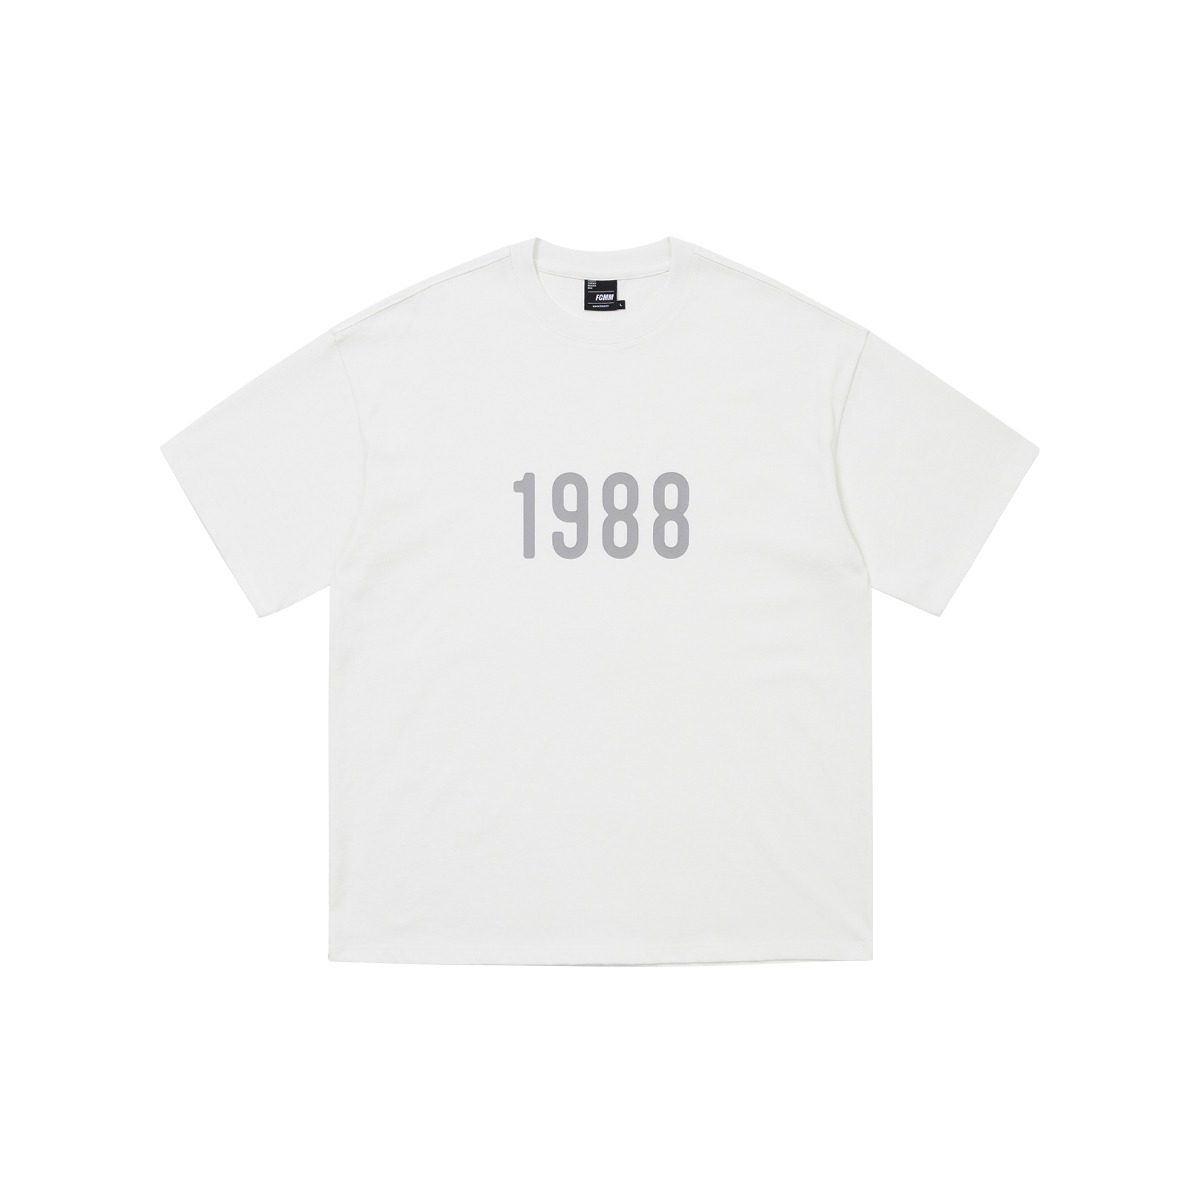 (04월 22일 순차발송)1988 레트로 티셔츠 - 화이트